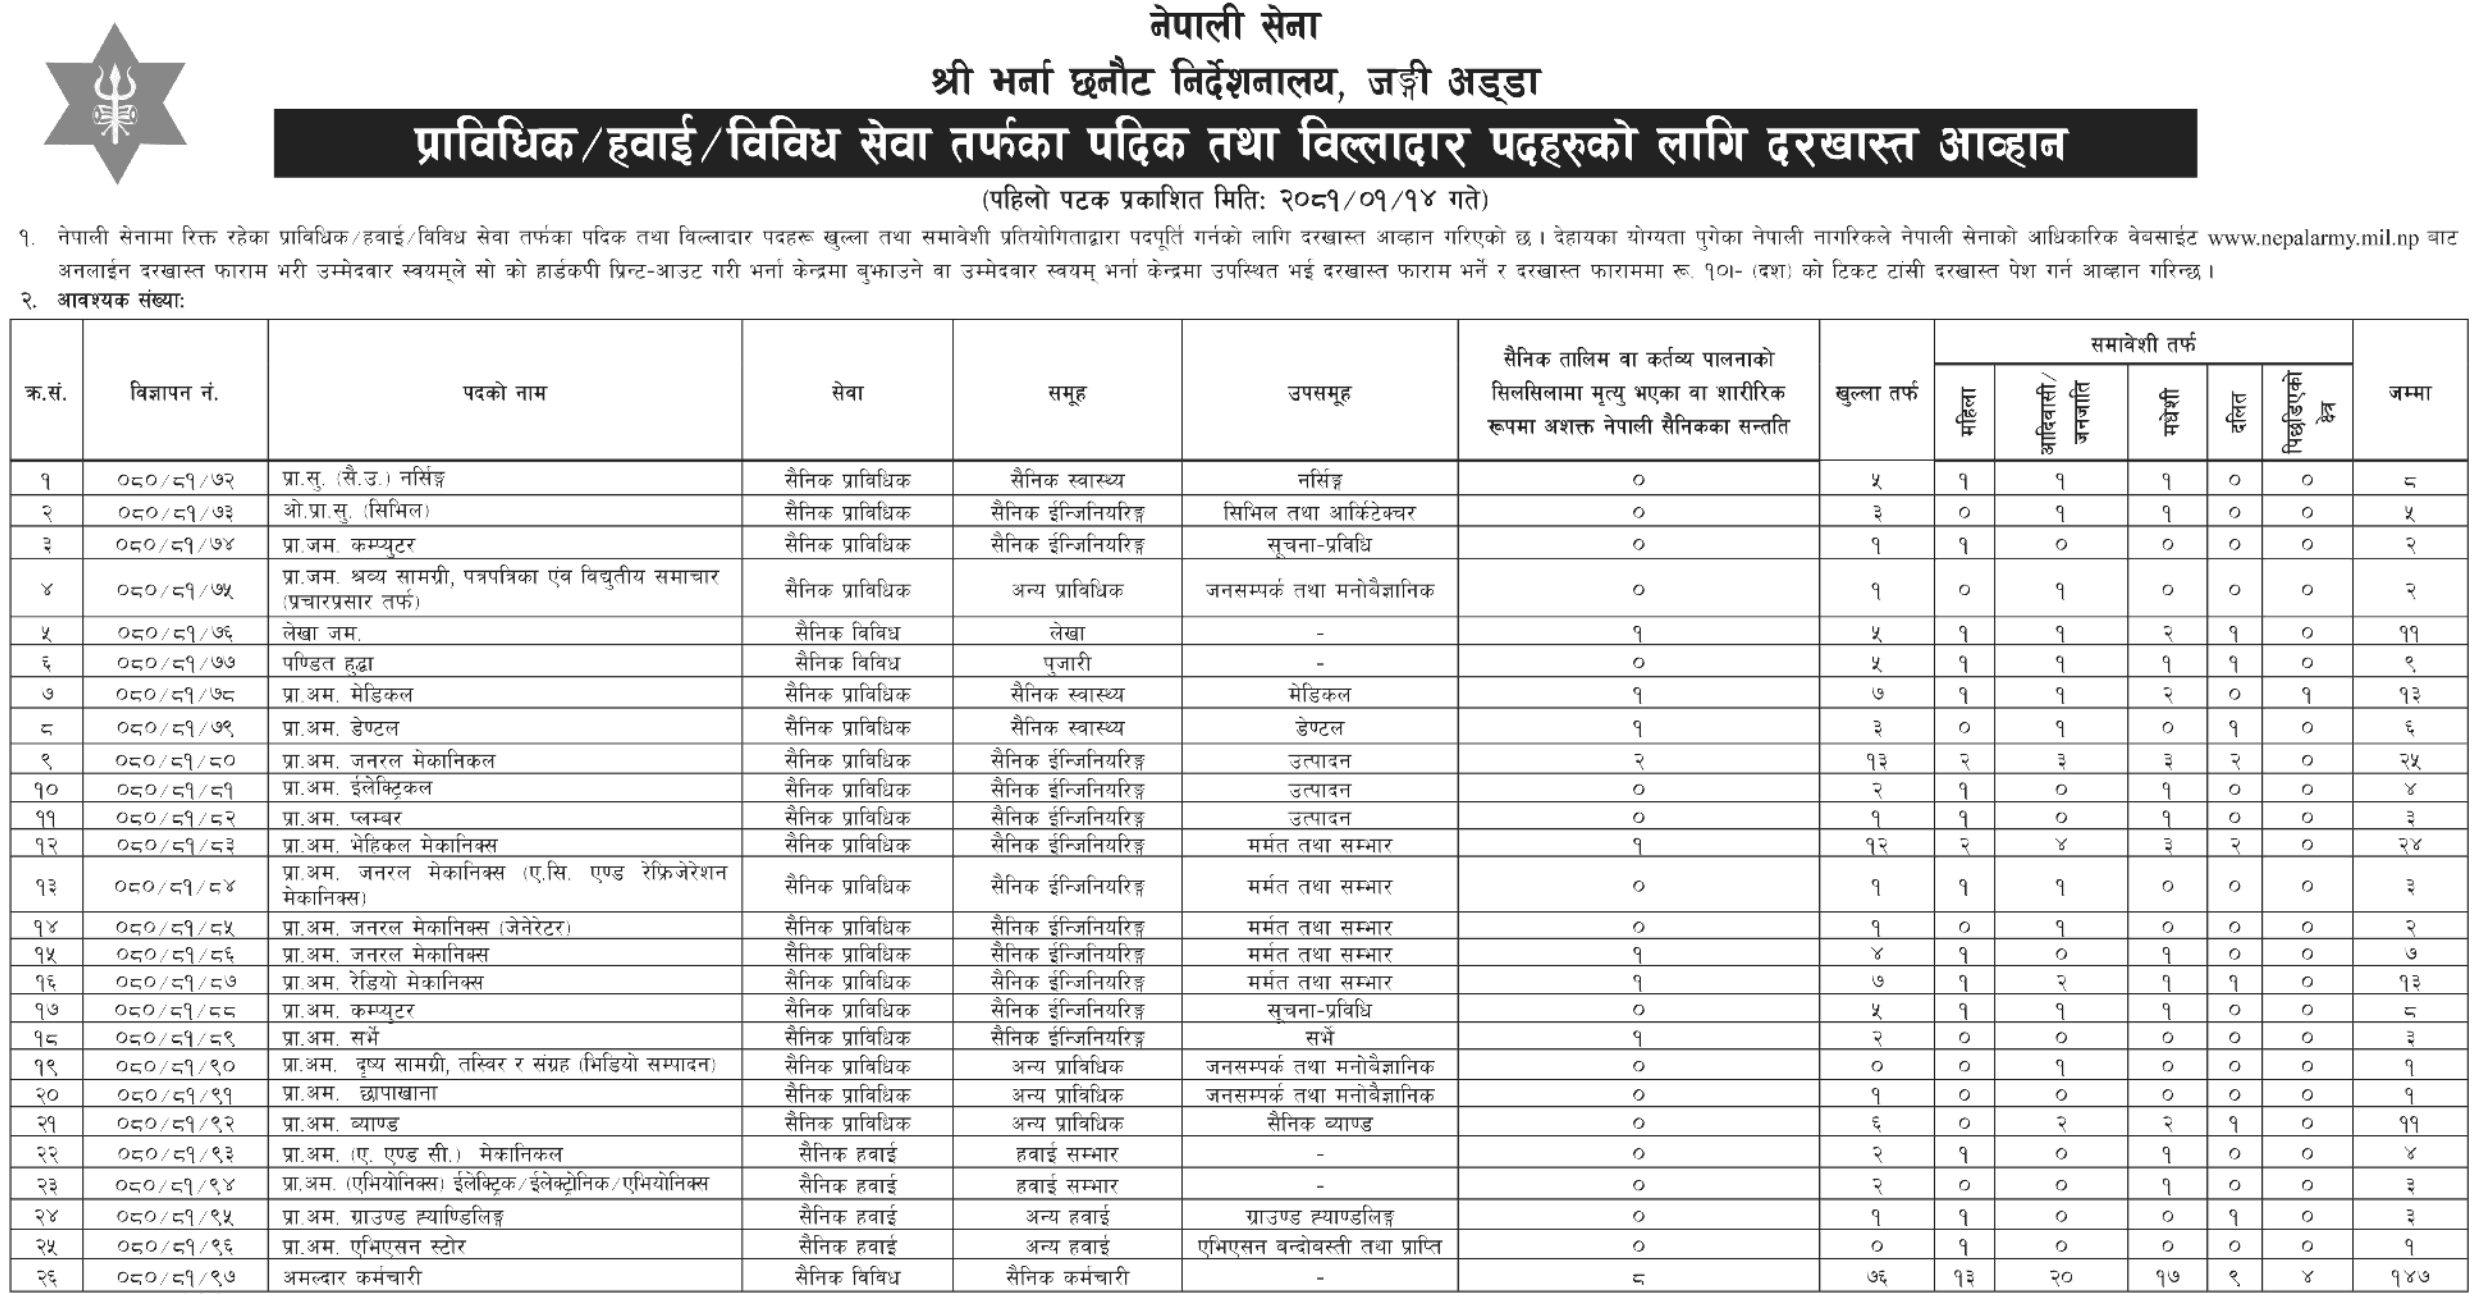 7702__Nepal-Army-Vacancy-for-Prabidhik-Padik-and-Billadar-2081.png